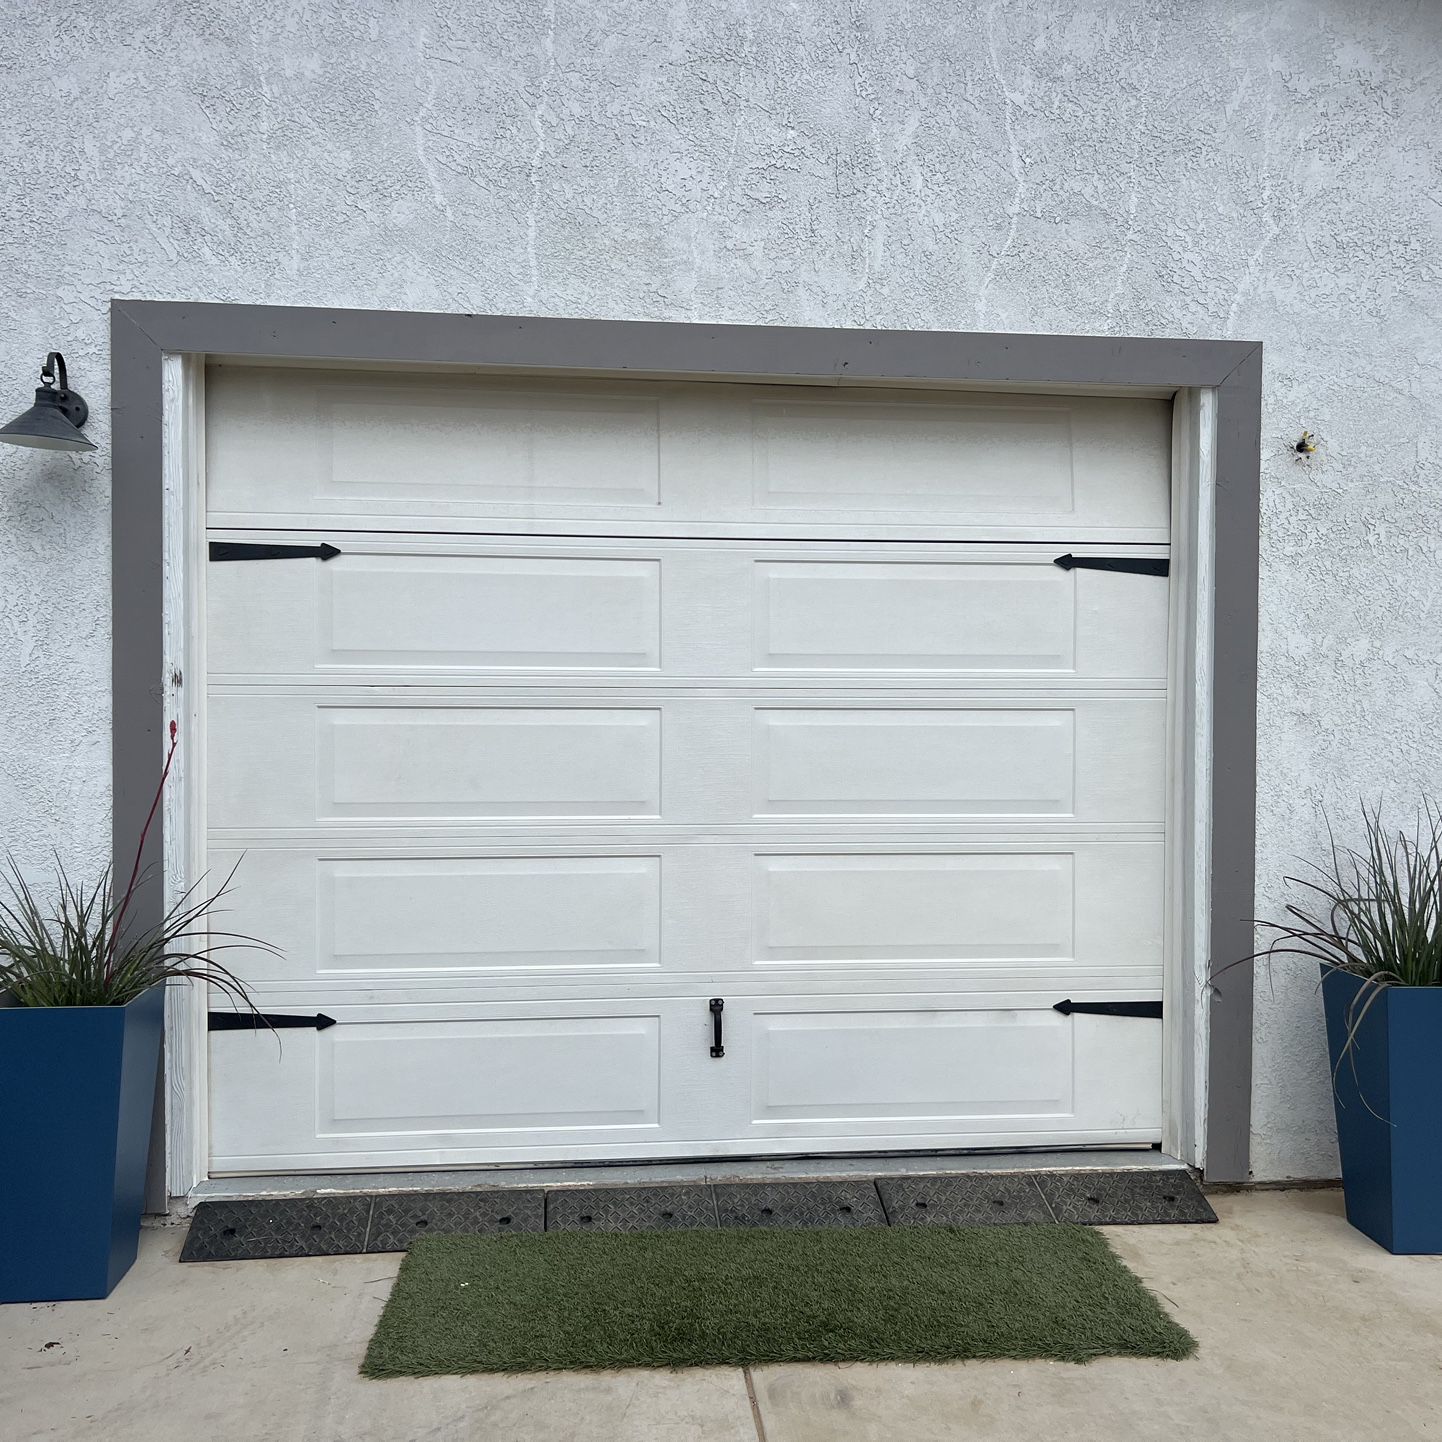 10’ X 8’ Garage Door